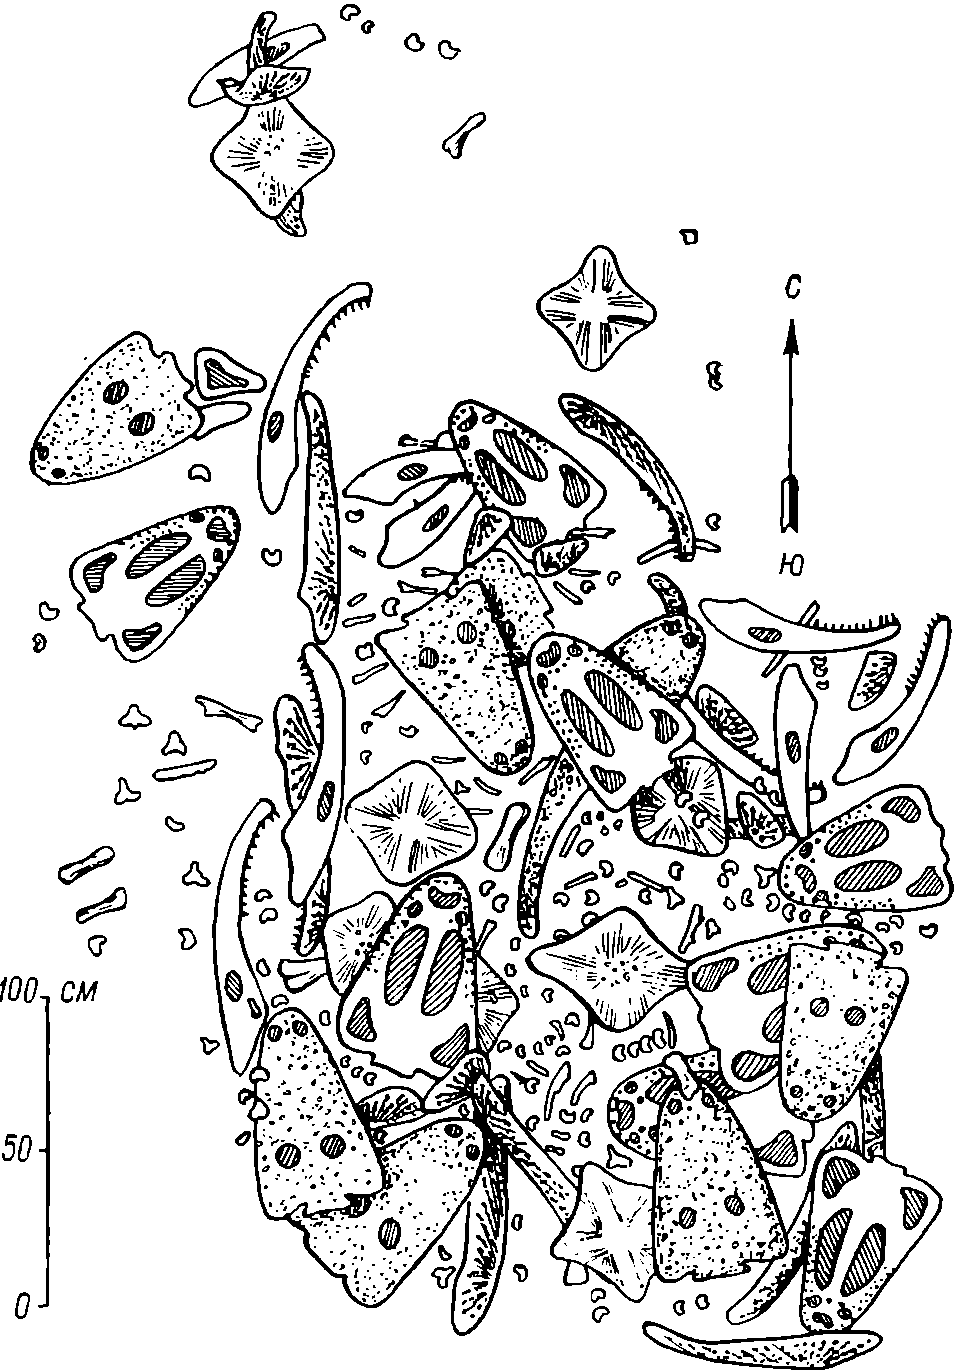 Скопление скелетов лабиринтодонтов в раскопке на реке Бердянке